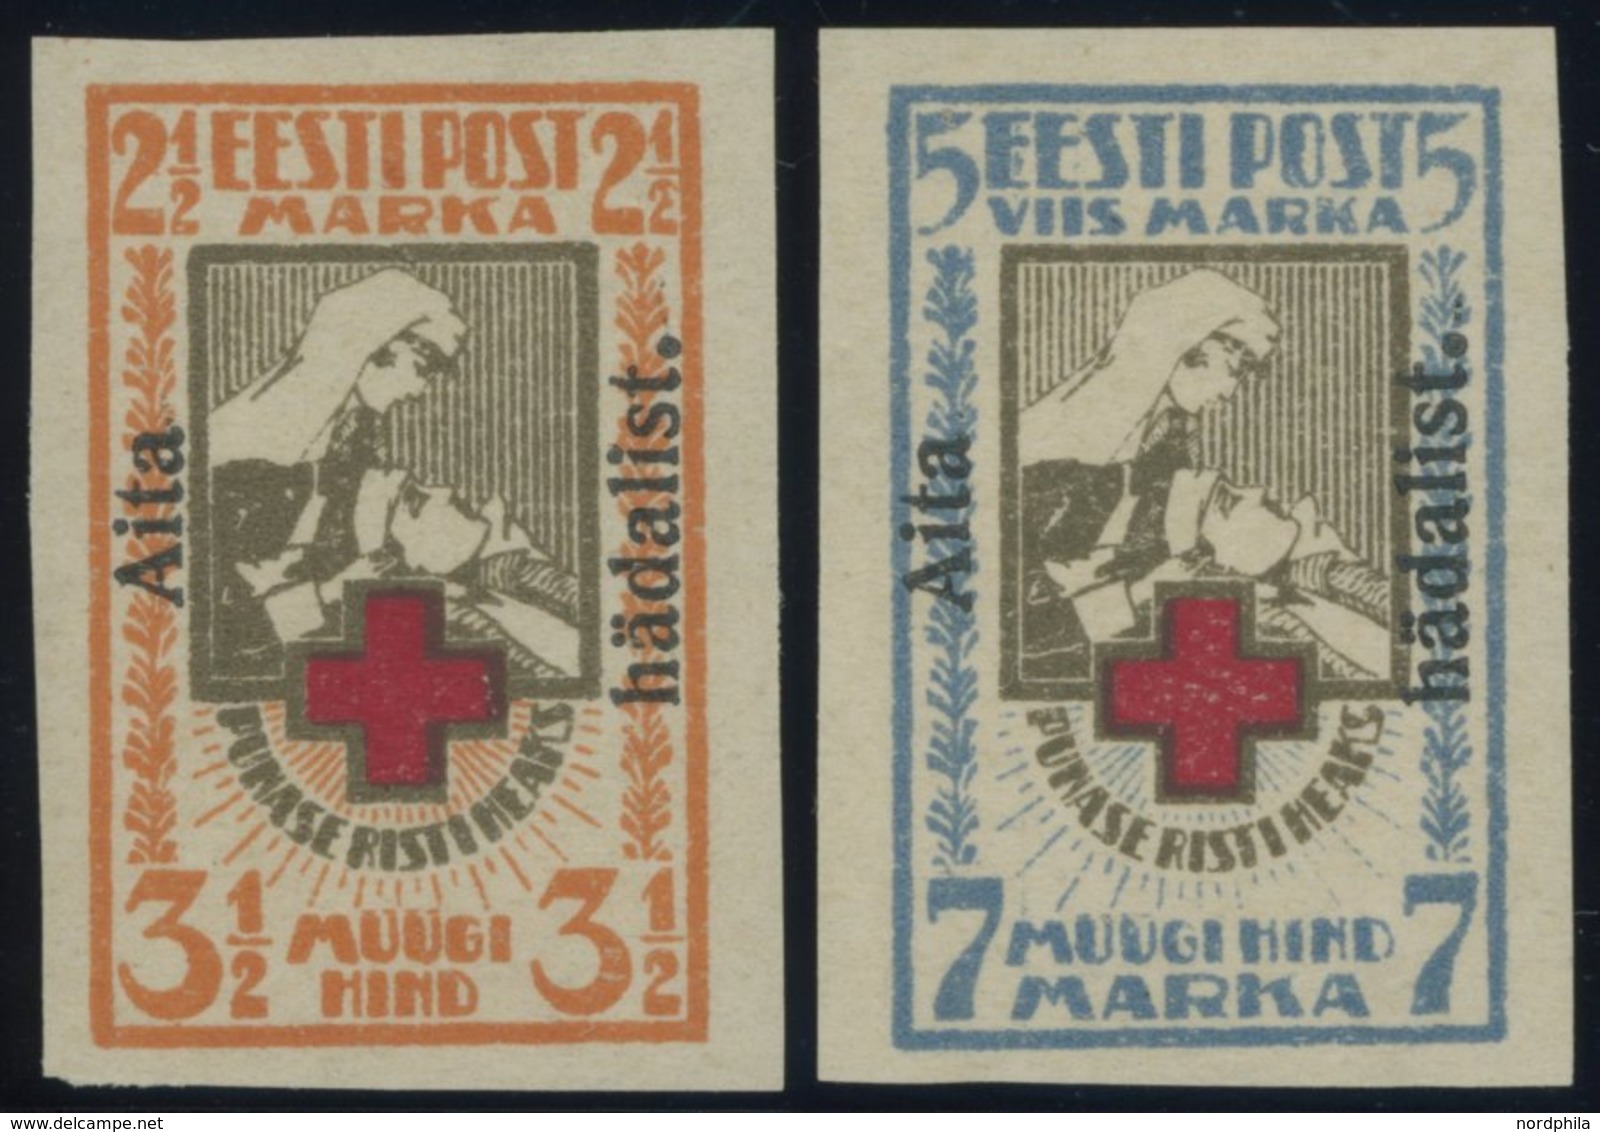 ESTLAND 46/7B *, 1923, Wohlfahrt, Ungezähnt, Falzrest, Pracht - Estonia